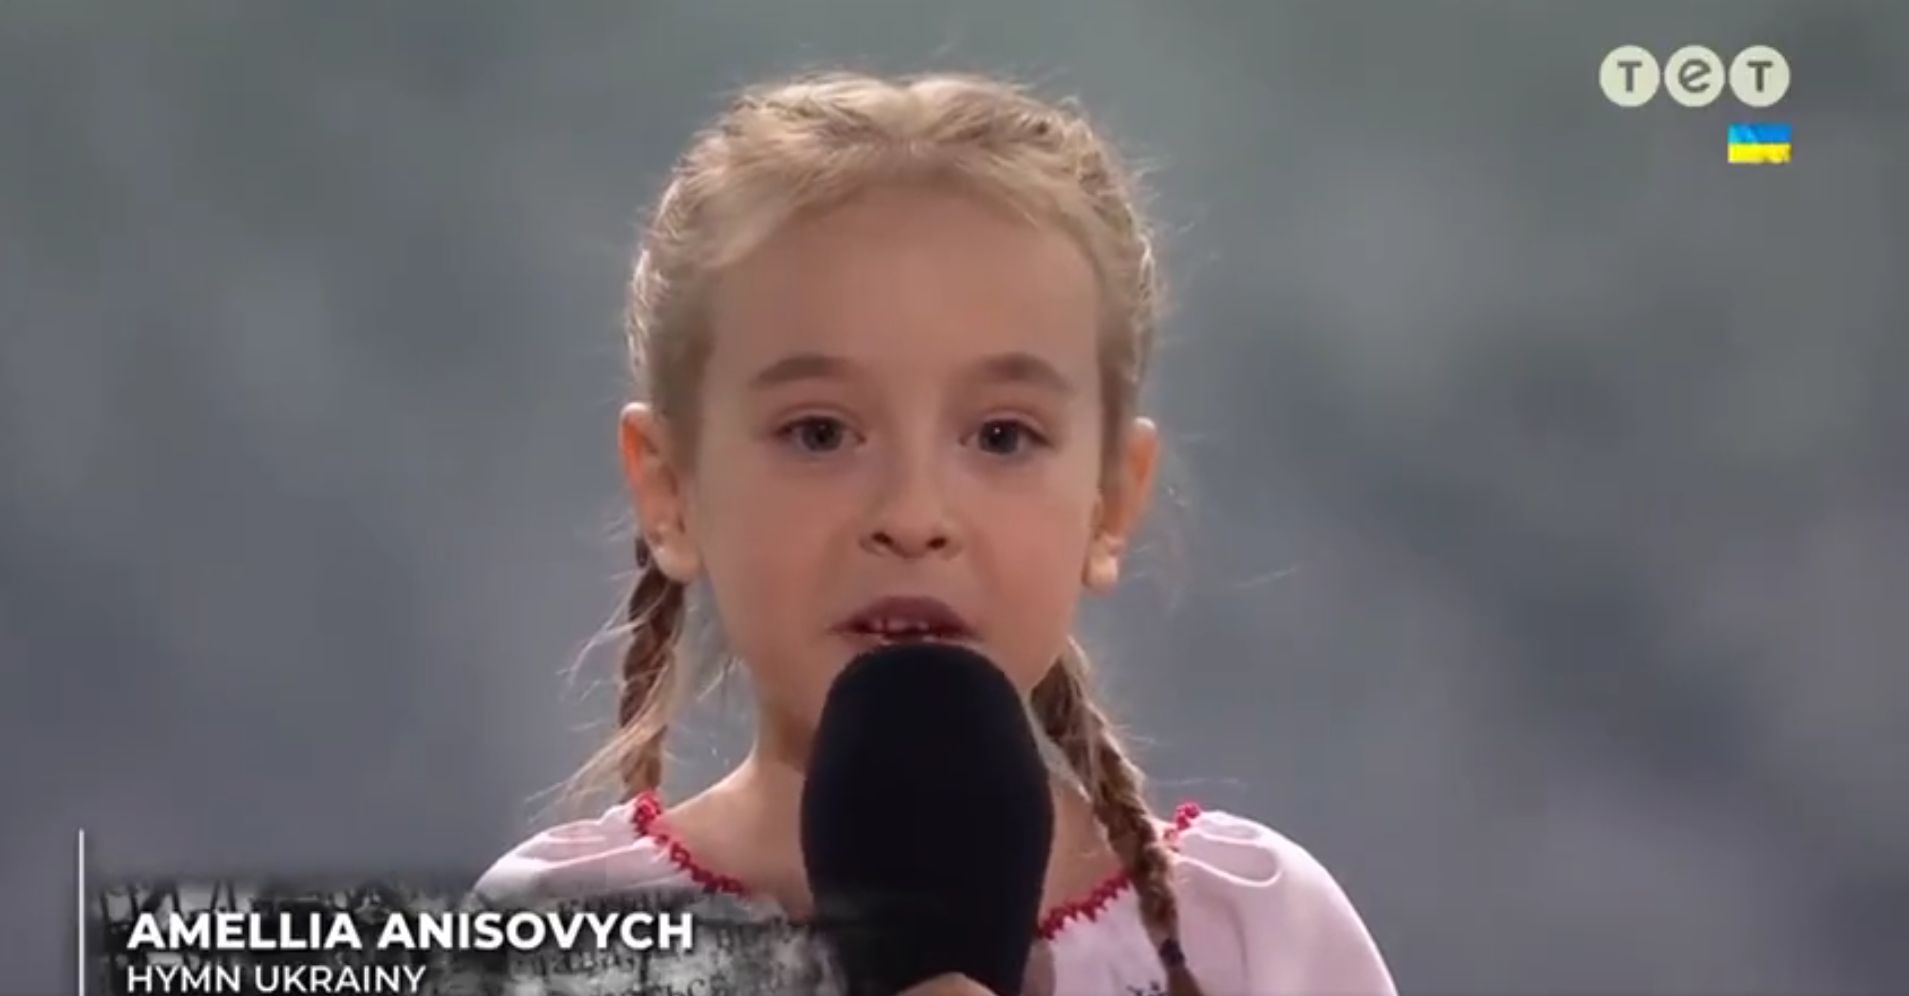 La petite Amelia a chanté l'hymne ukrainien dans un stade de Pologne pour un événement